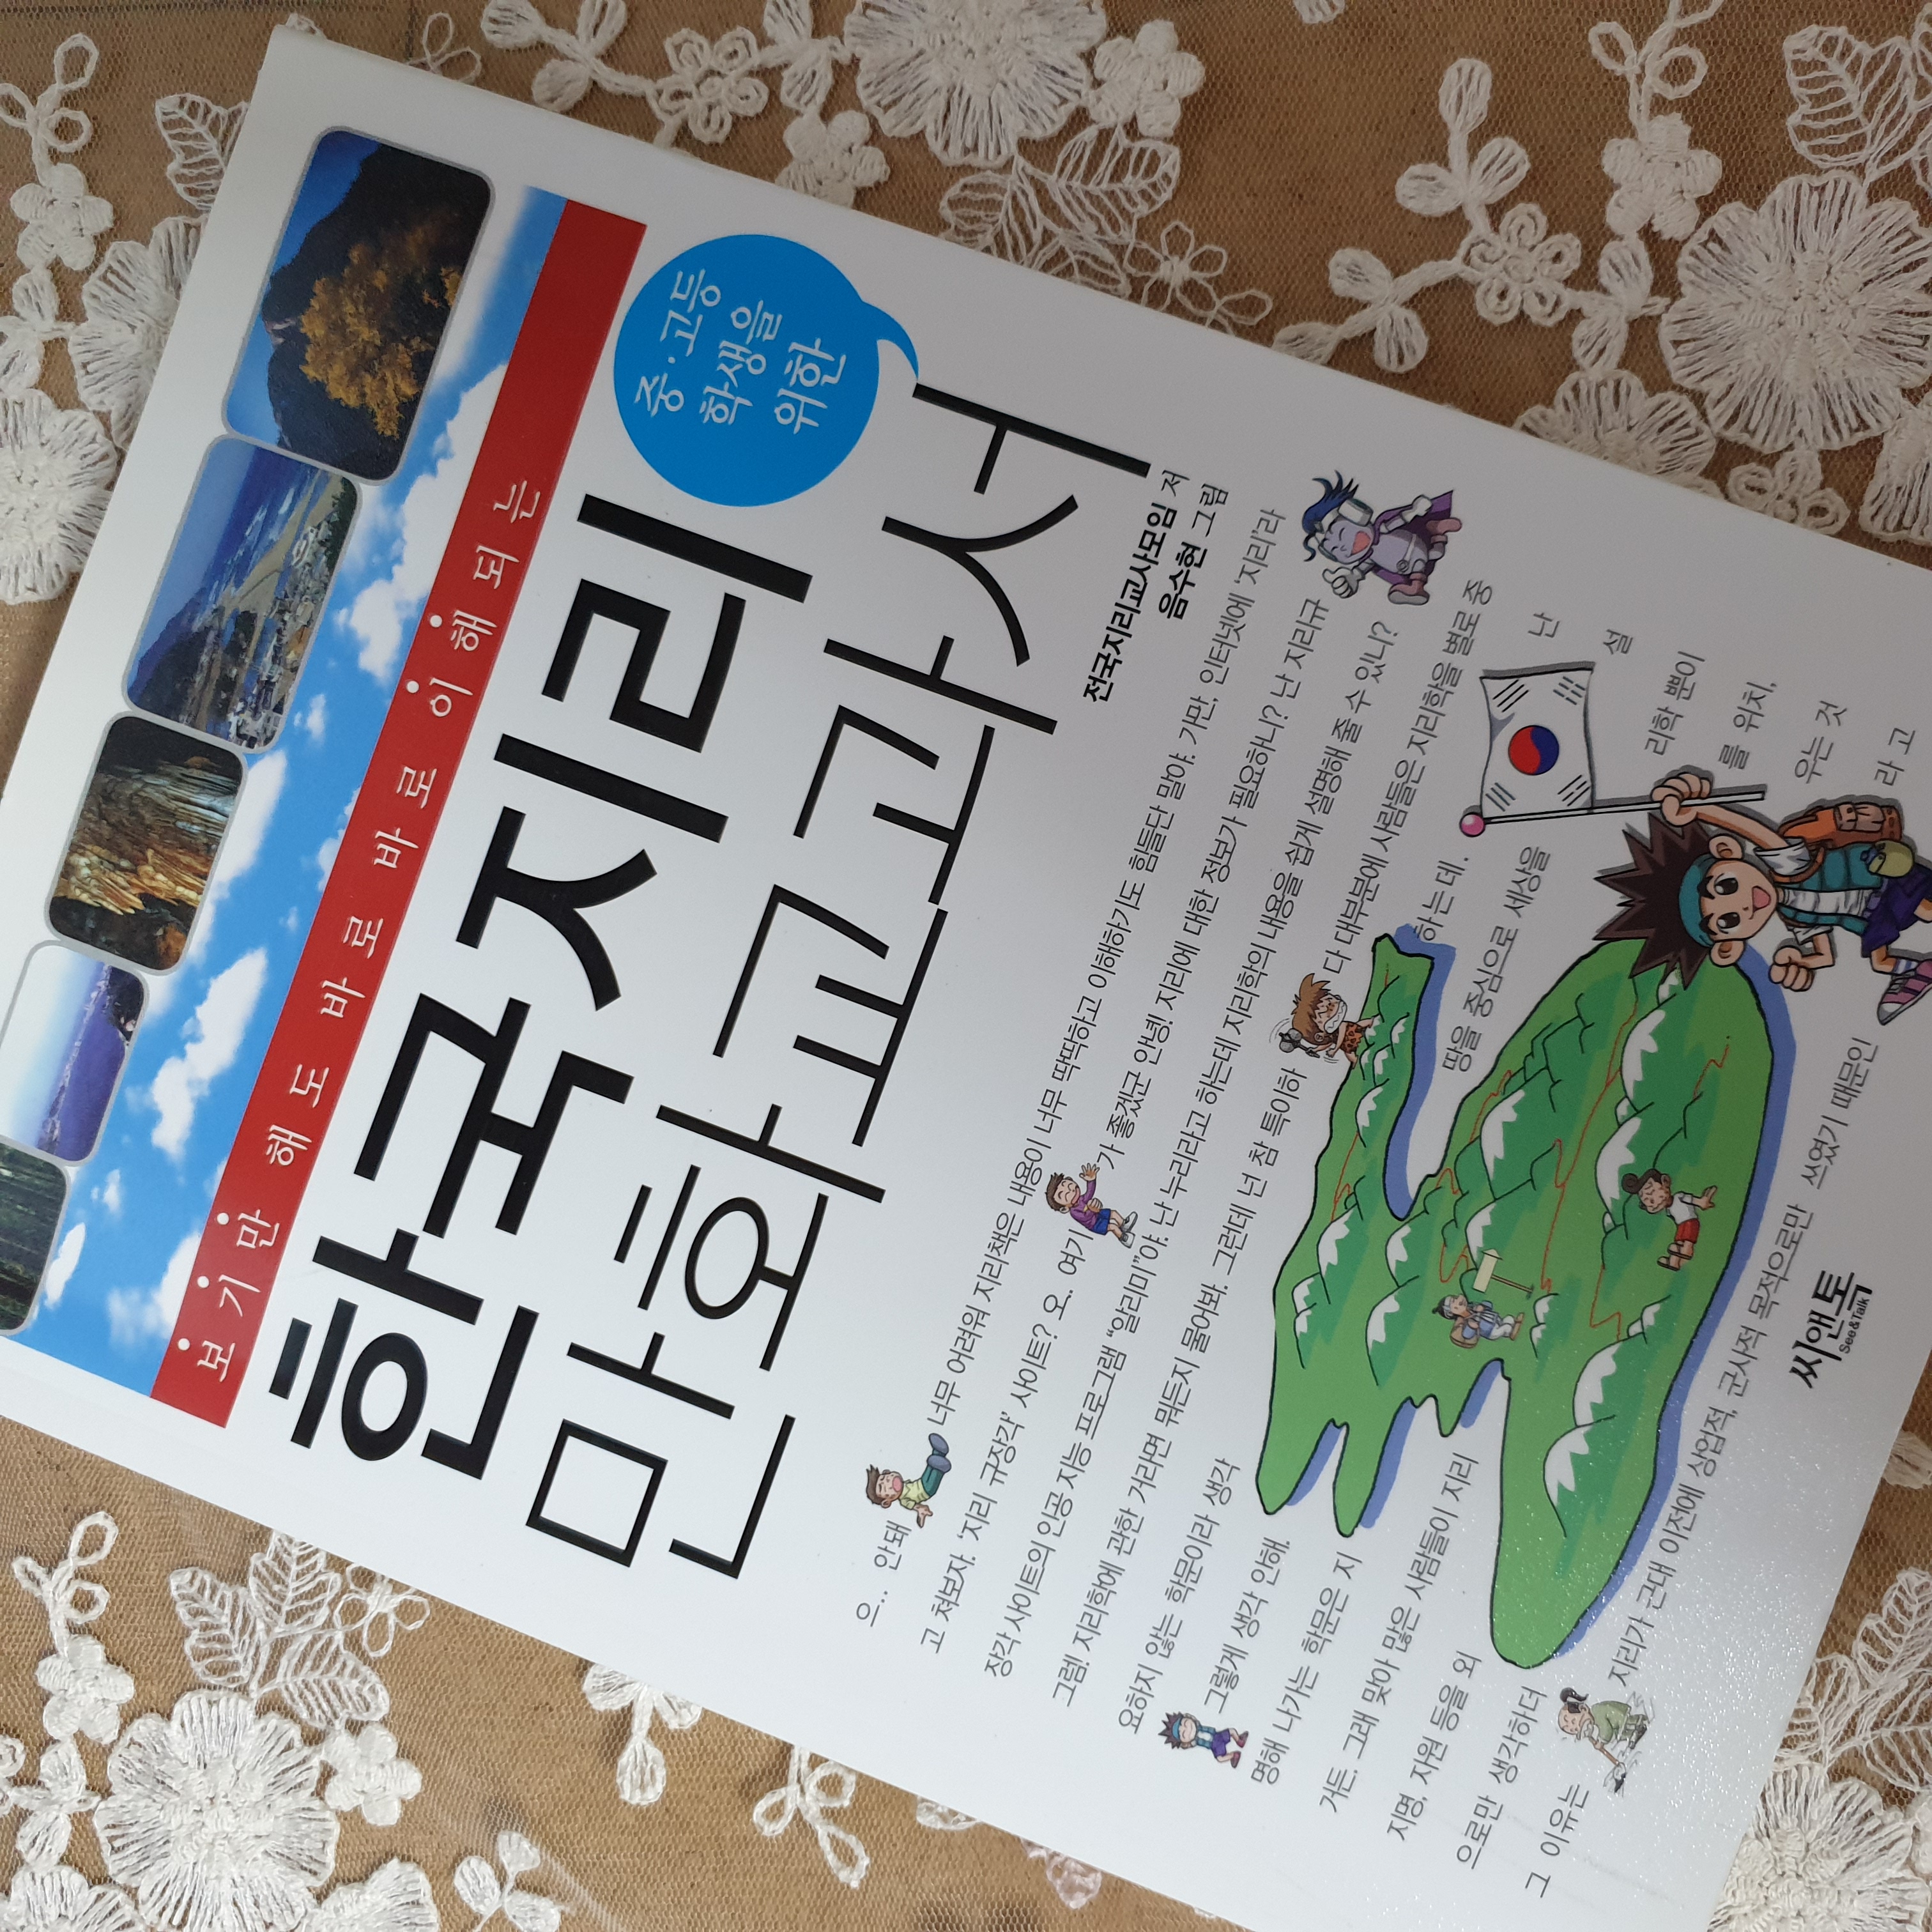 한국지리 만화교과서